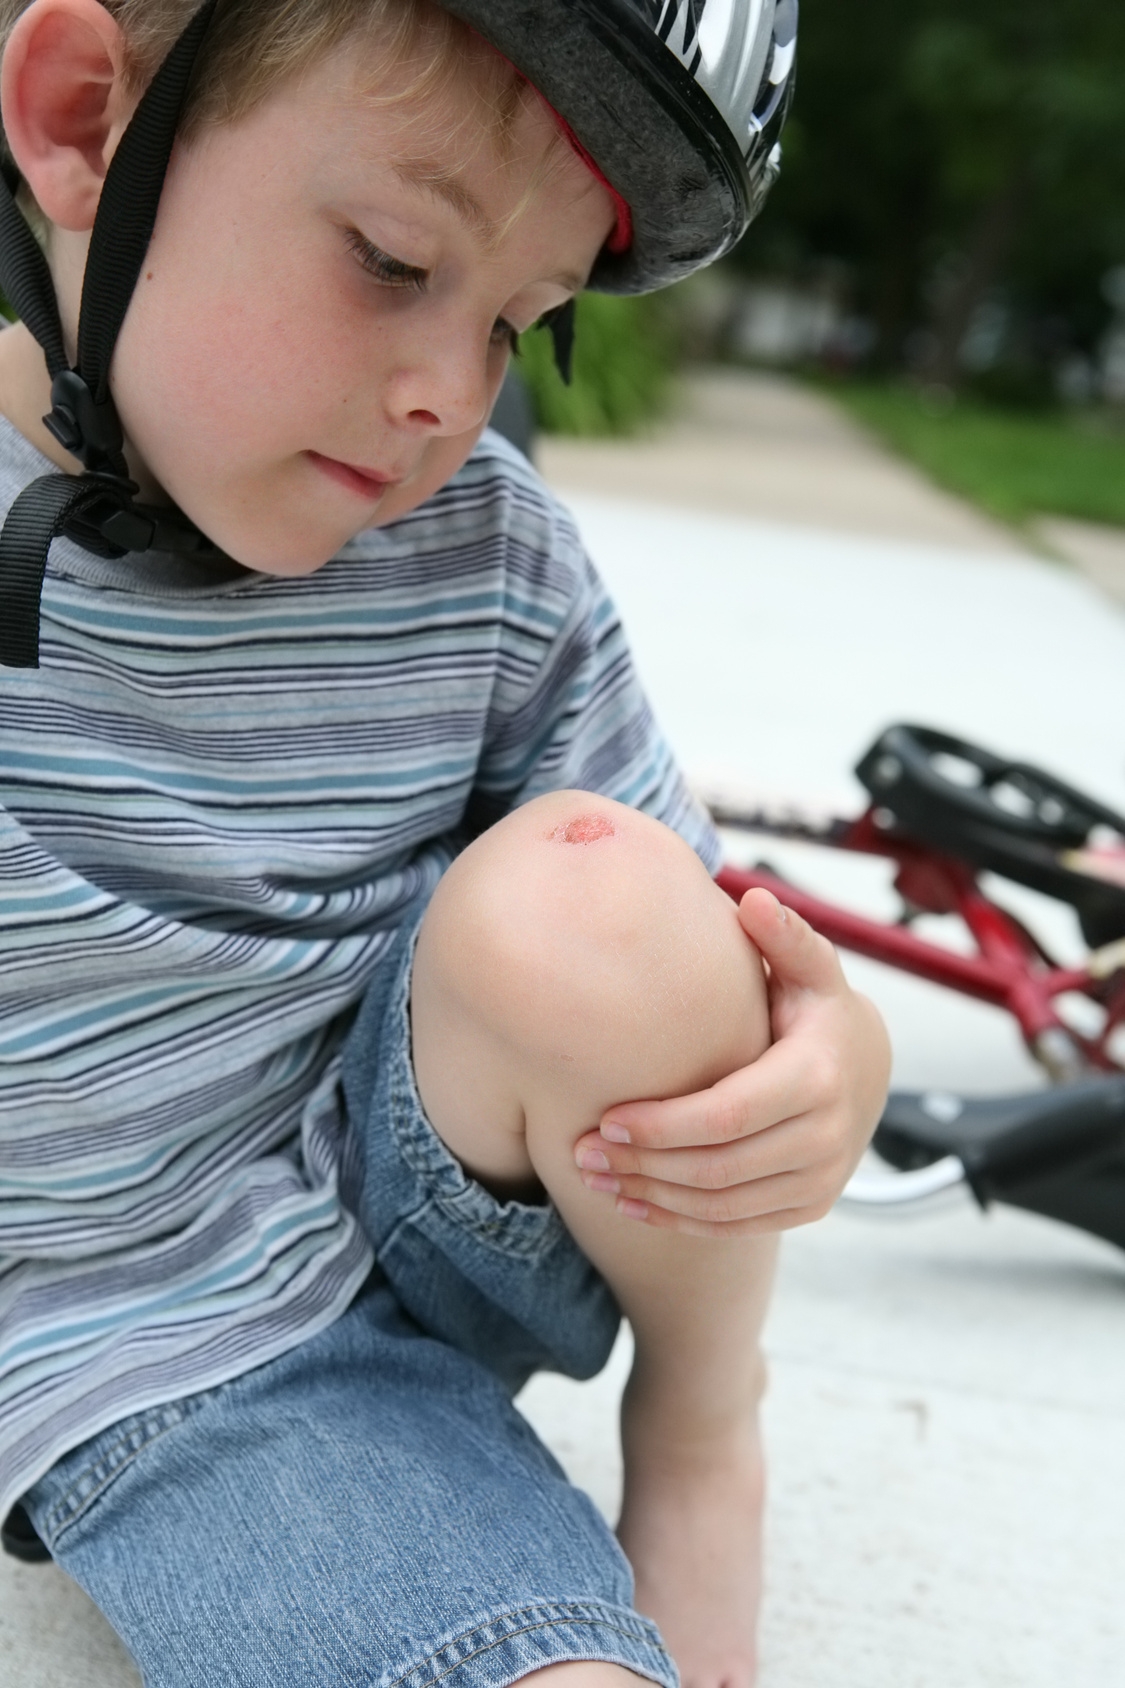 Детские травмы фф. Мальчик упал с велочэсипеоа.